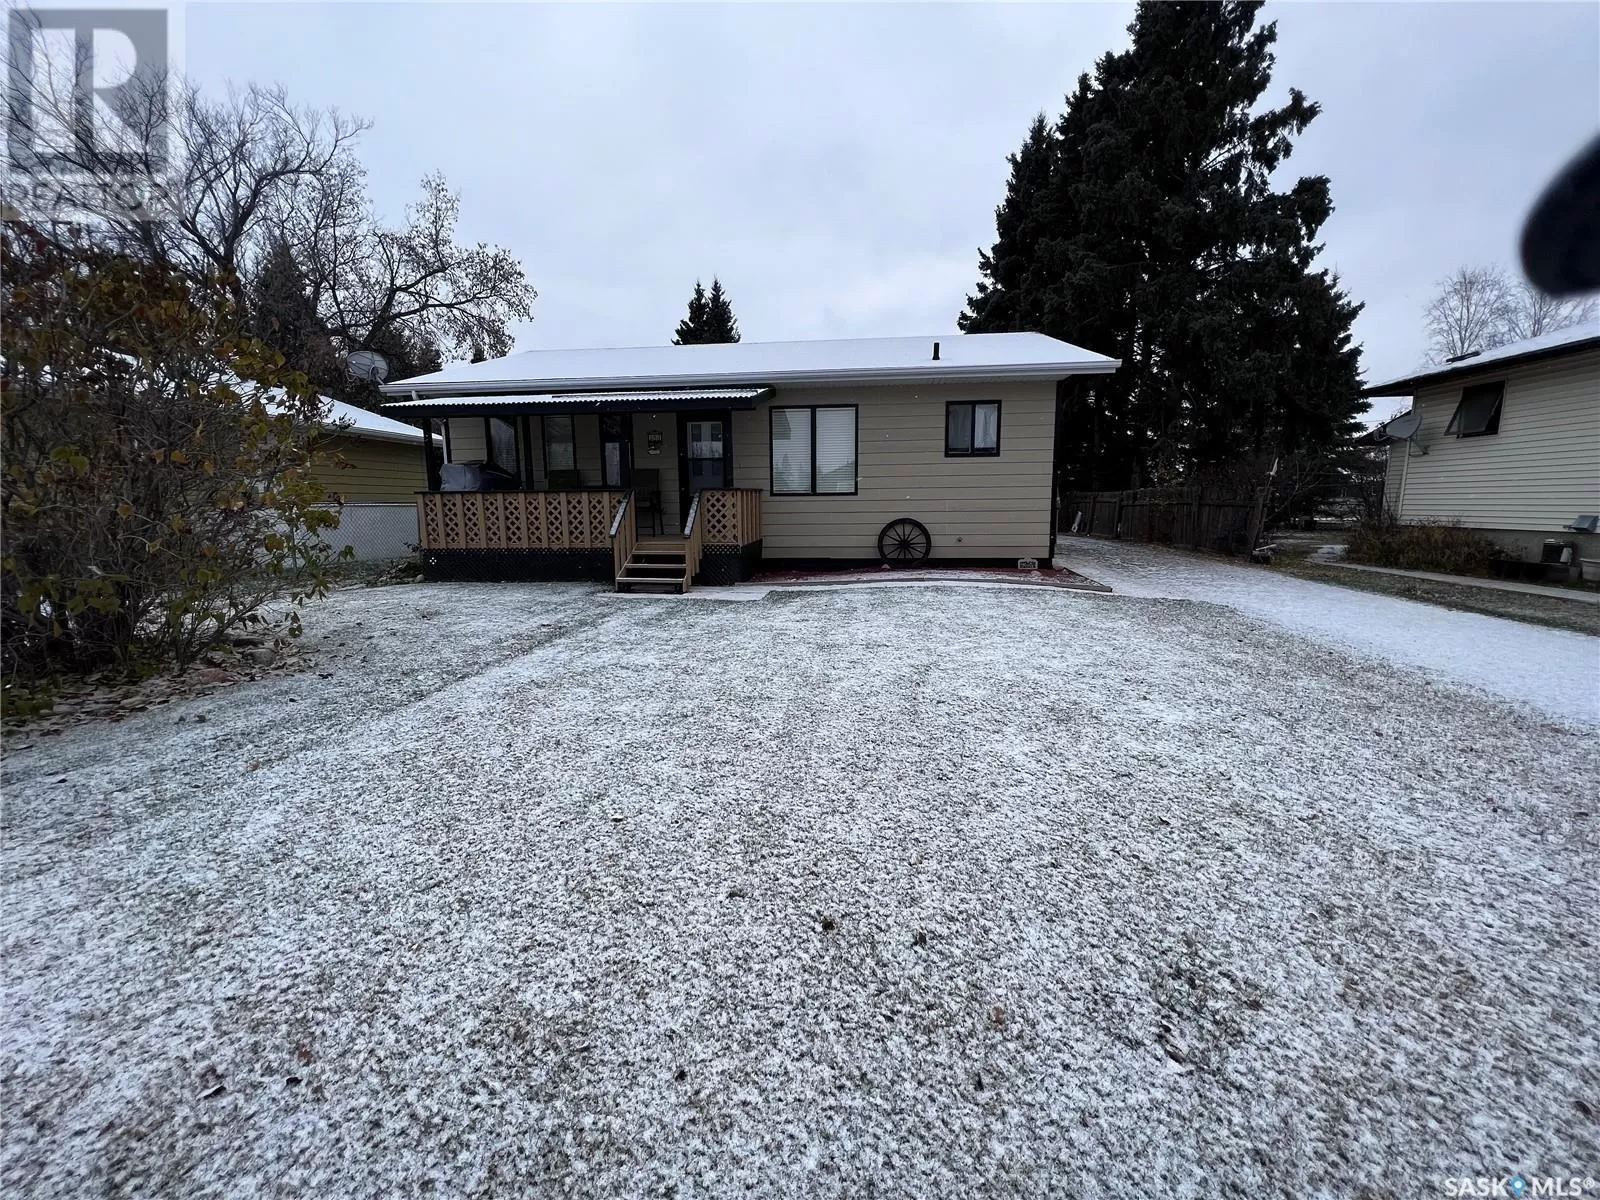 House for rent: 391 2nd Street W, Glaslyn, Saskatchewan S0M 2Y0